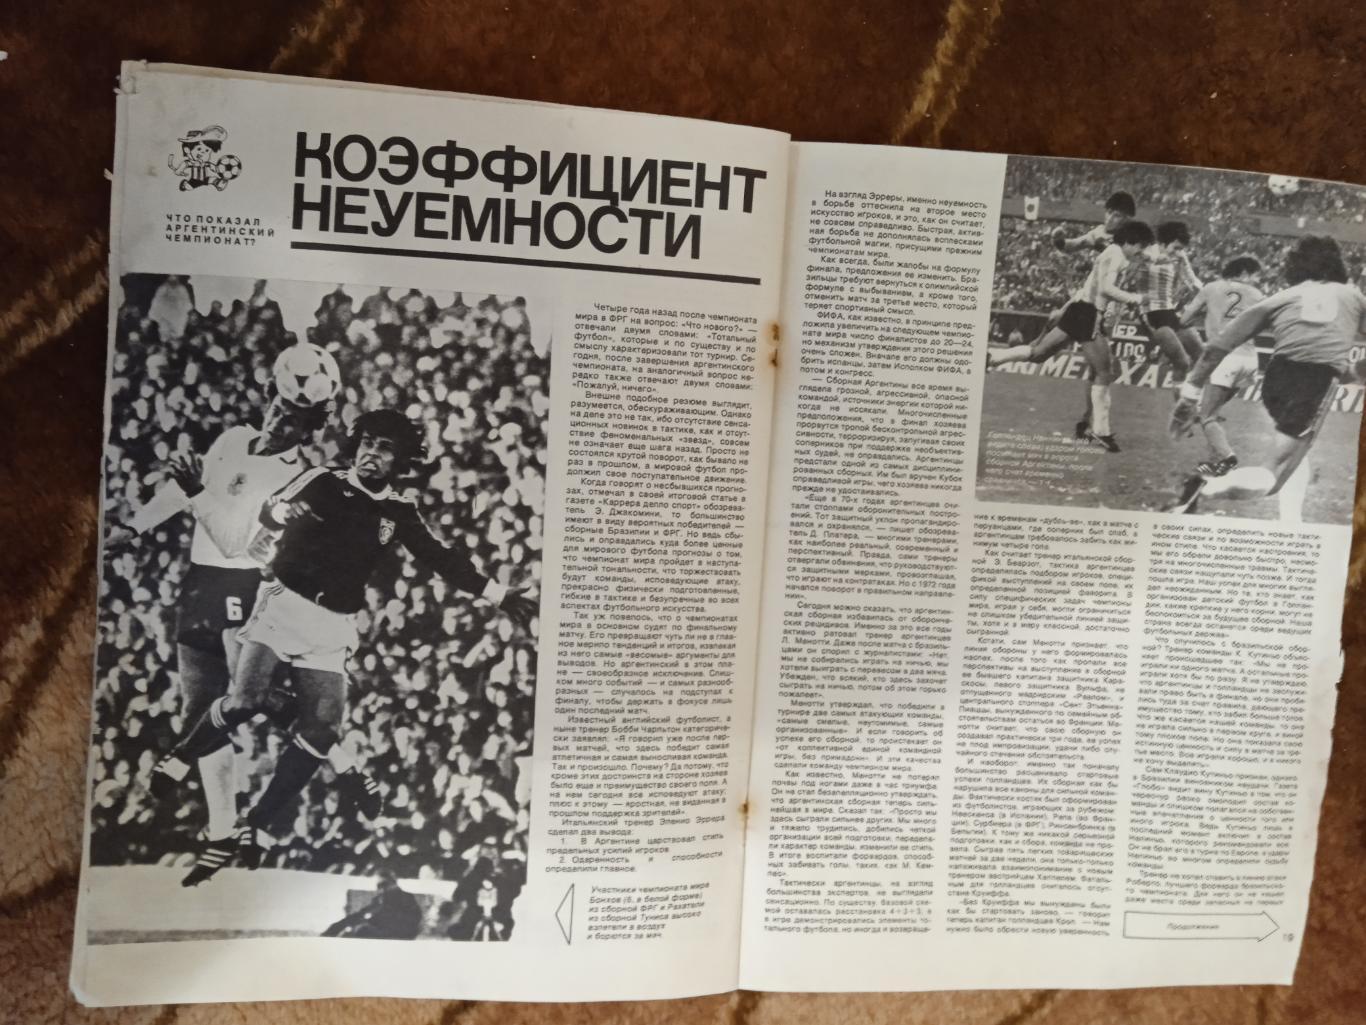 Журнал.Спортивные игры № 9 1978 г. Футбол,хоккей,волейбол.ЧМ 78.Аргентина. 3